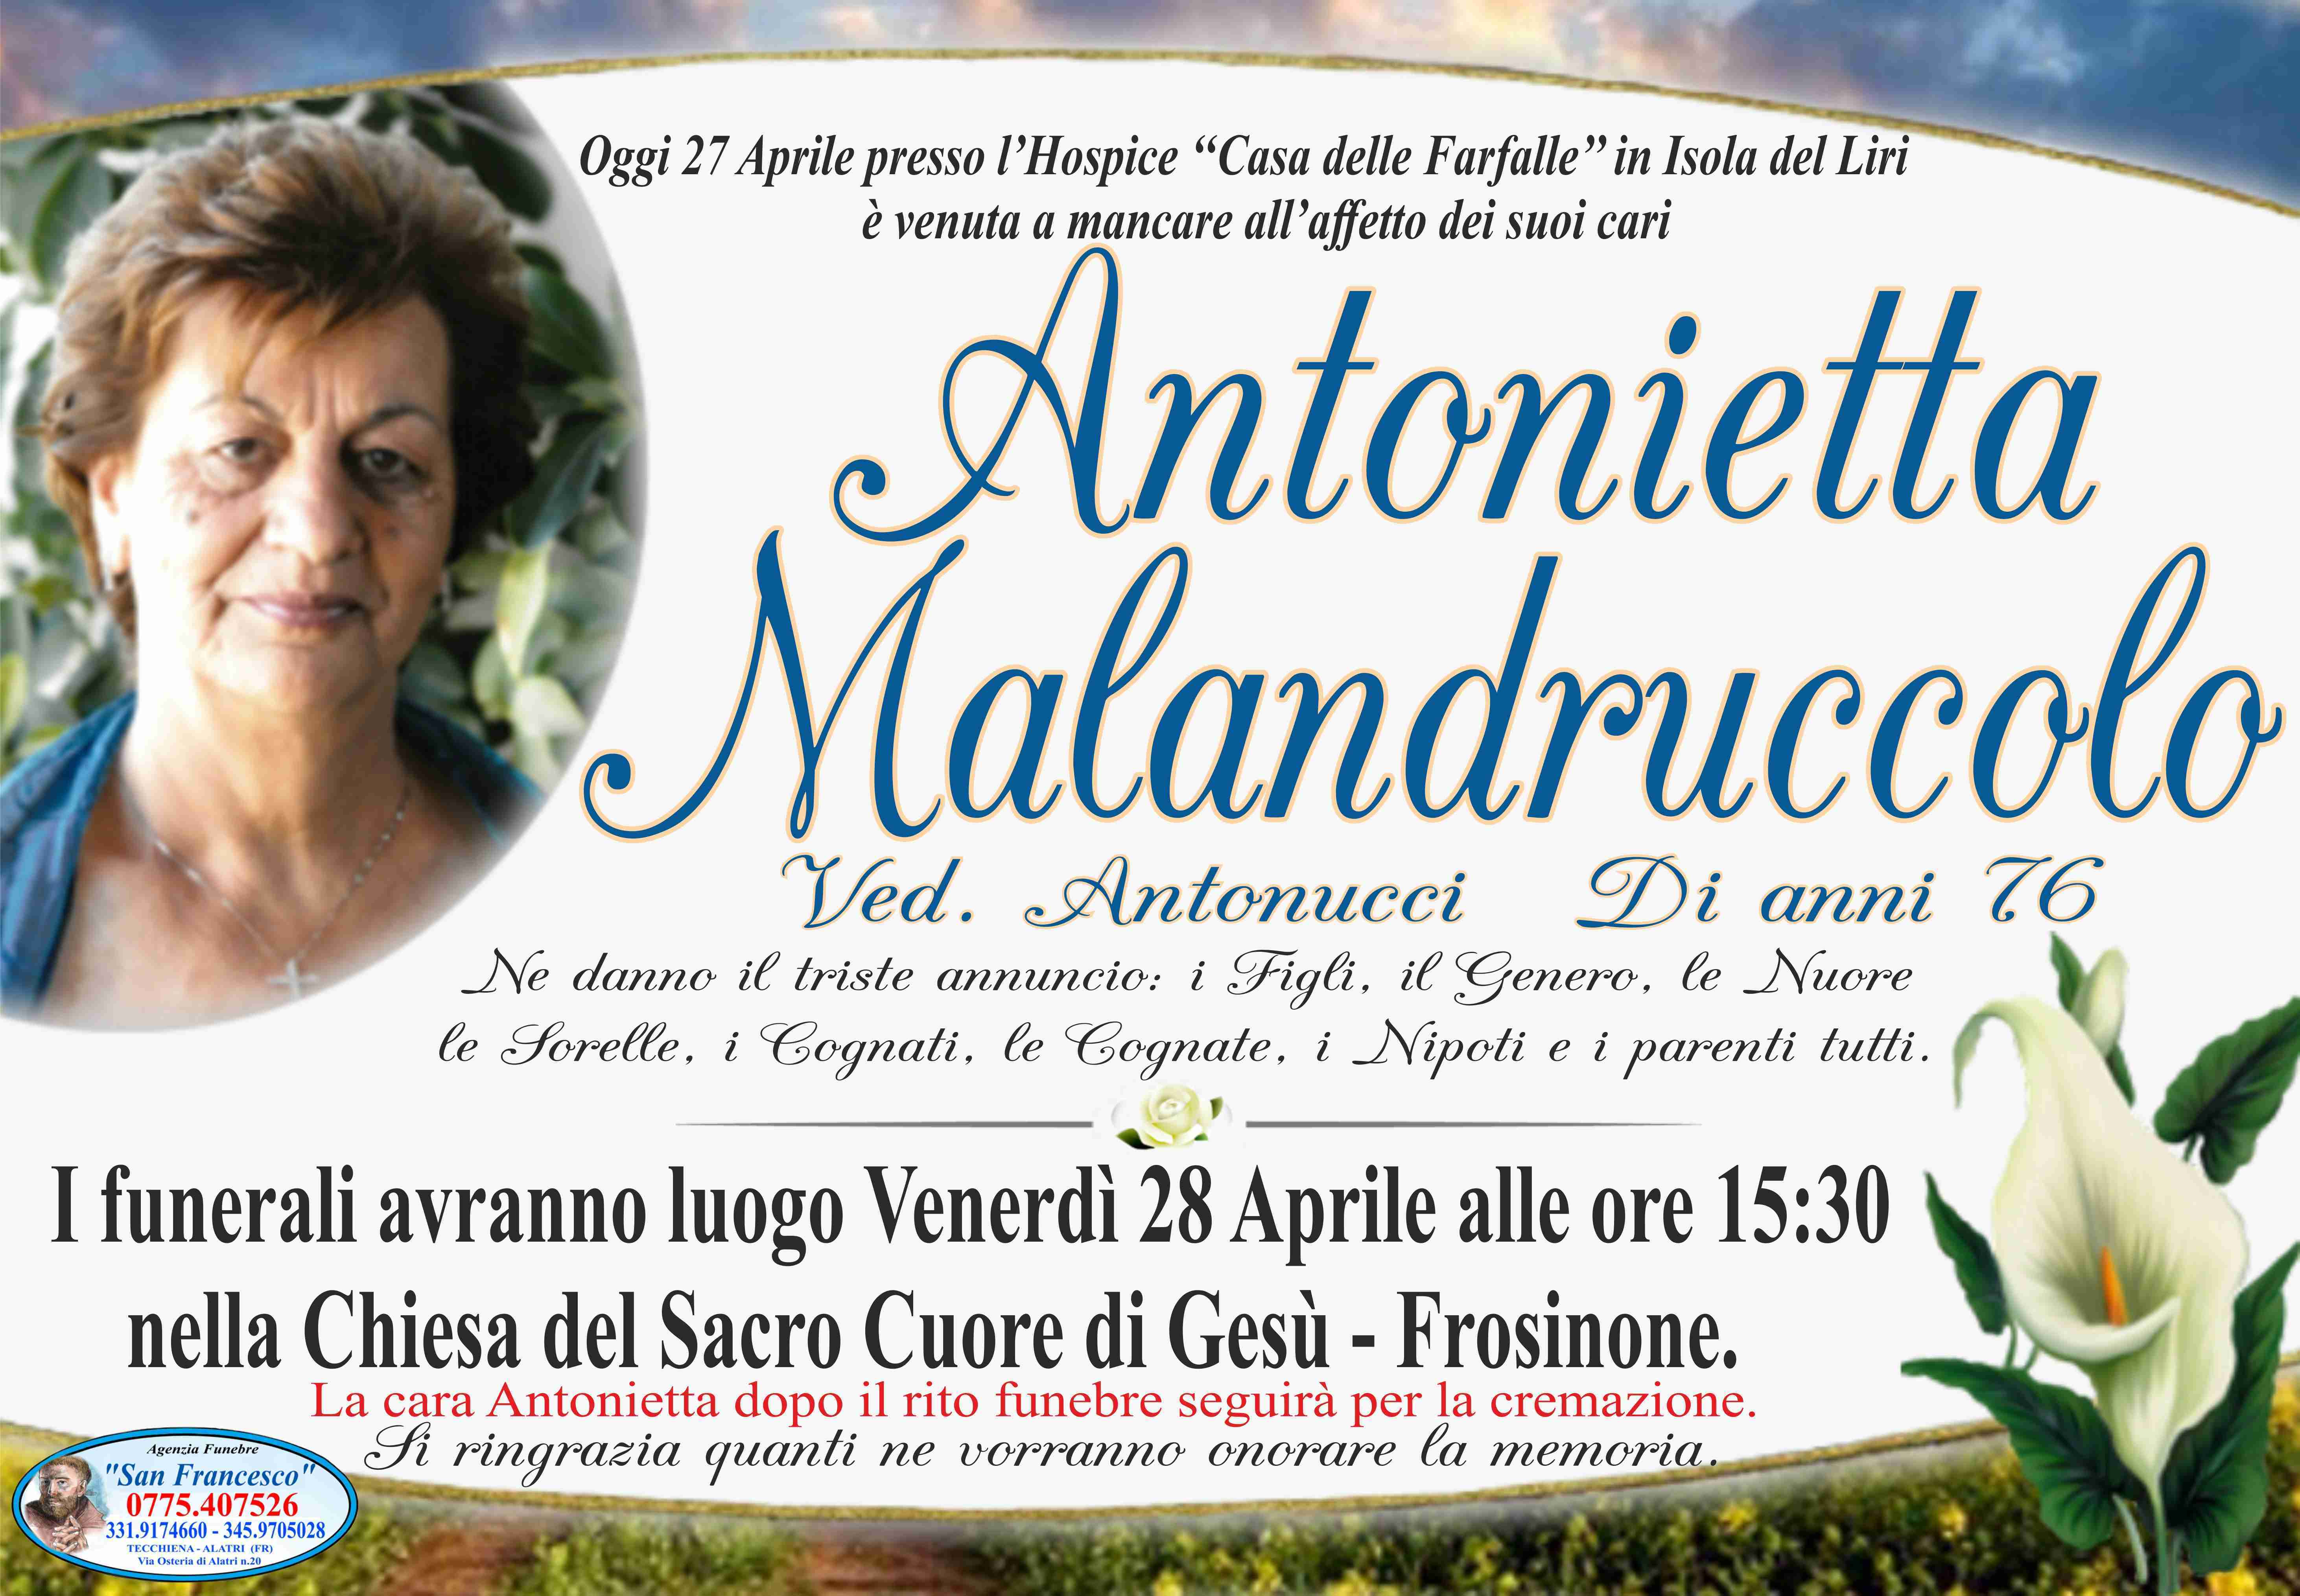 Antonietta Malandruccolo